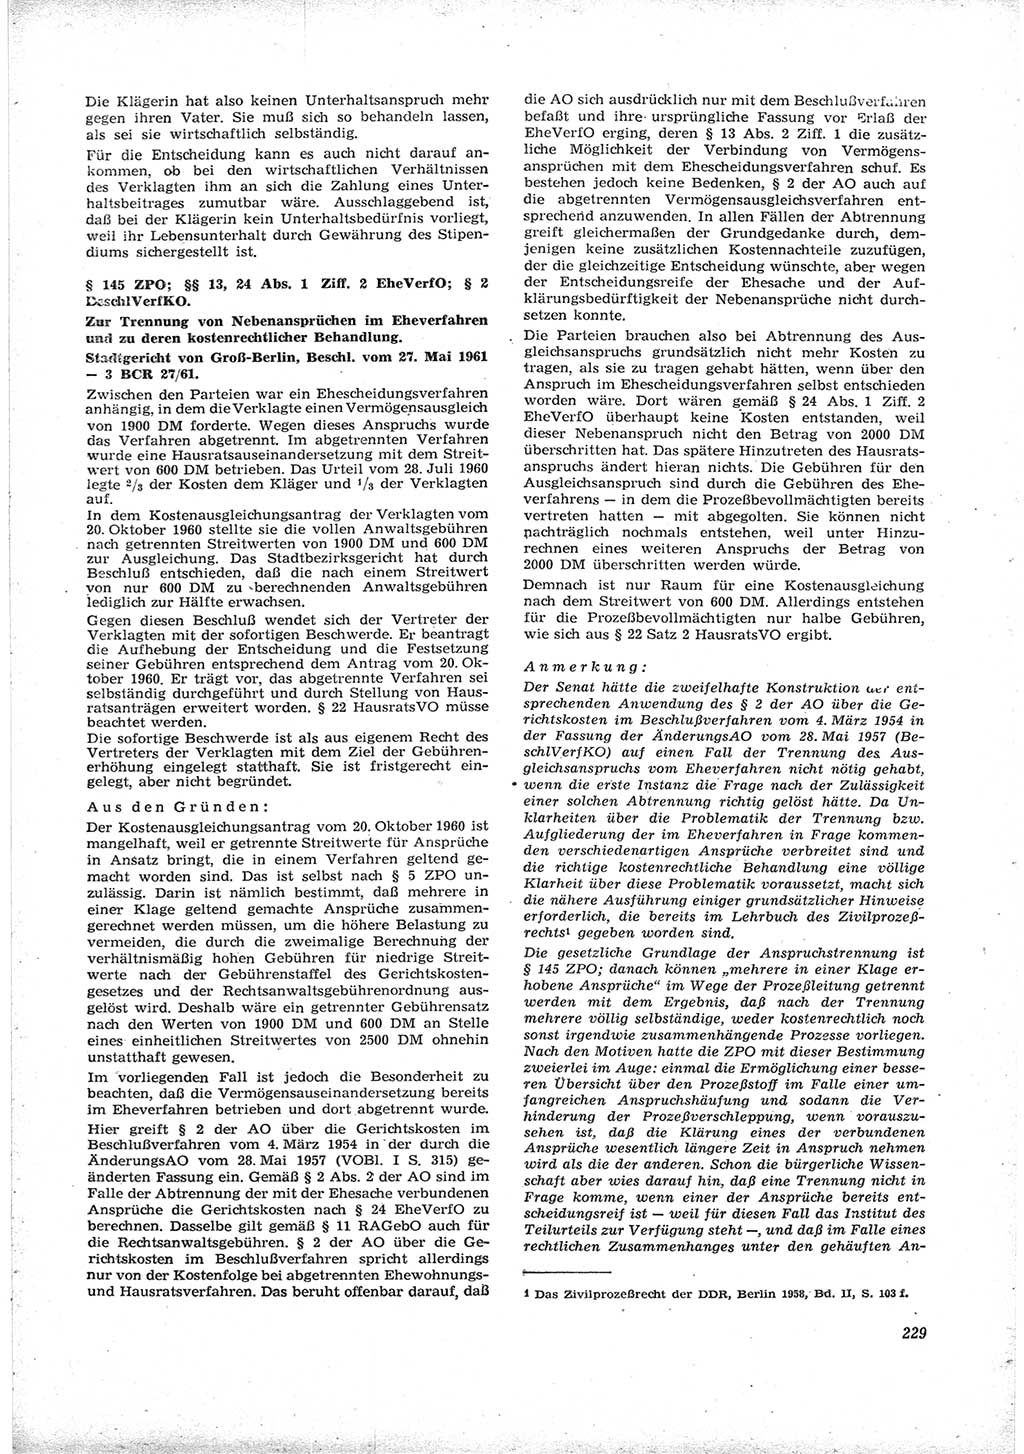 Neue Justiz (NJ), Zeitschrift für Recht und Rechtswissenschaft [Deutsche Demokratische Republik (DDR)], 16. Jahrgang 1962, Seite 229 (NJ DDR 1962, S. 229)